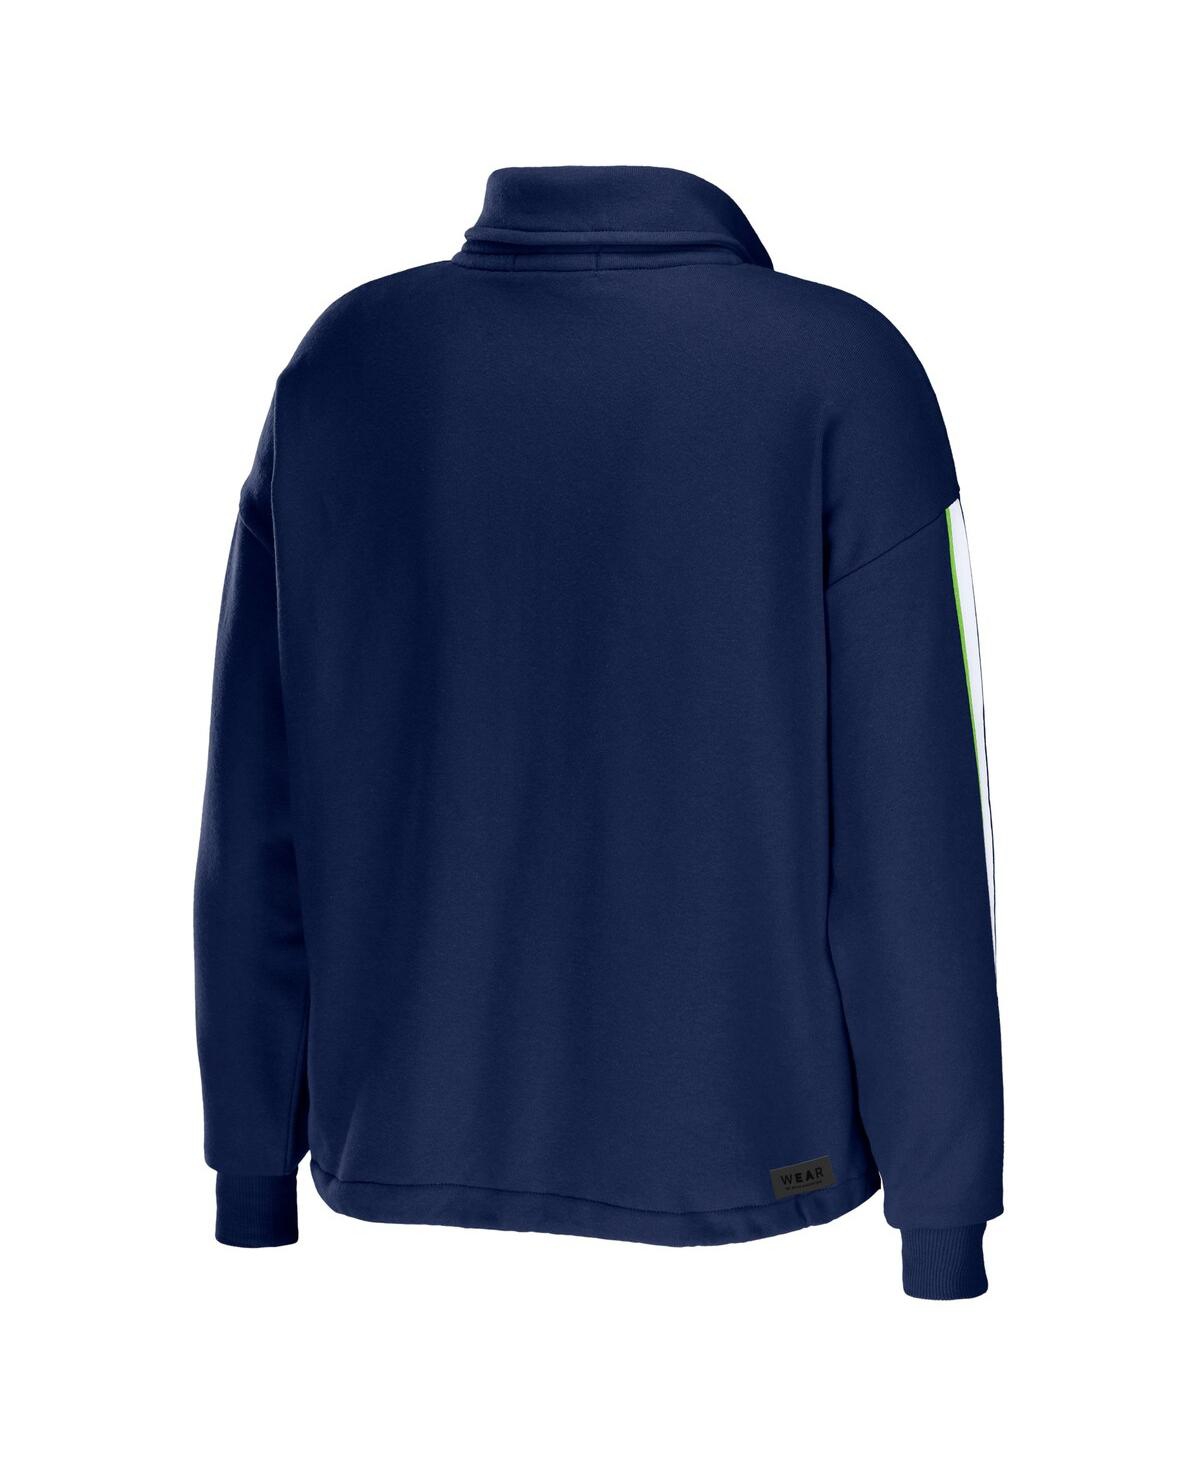 Shop Wear By Erin Andrews Women's  College Navy Seattle Seahawks Logo Stripe Half-zip Top